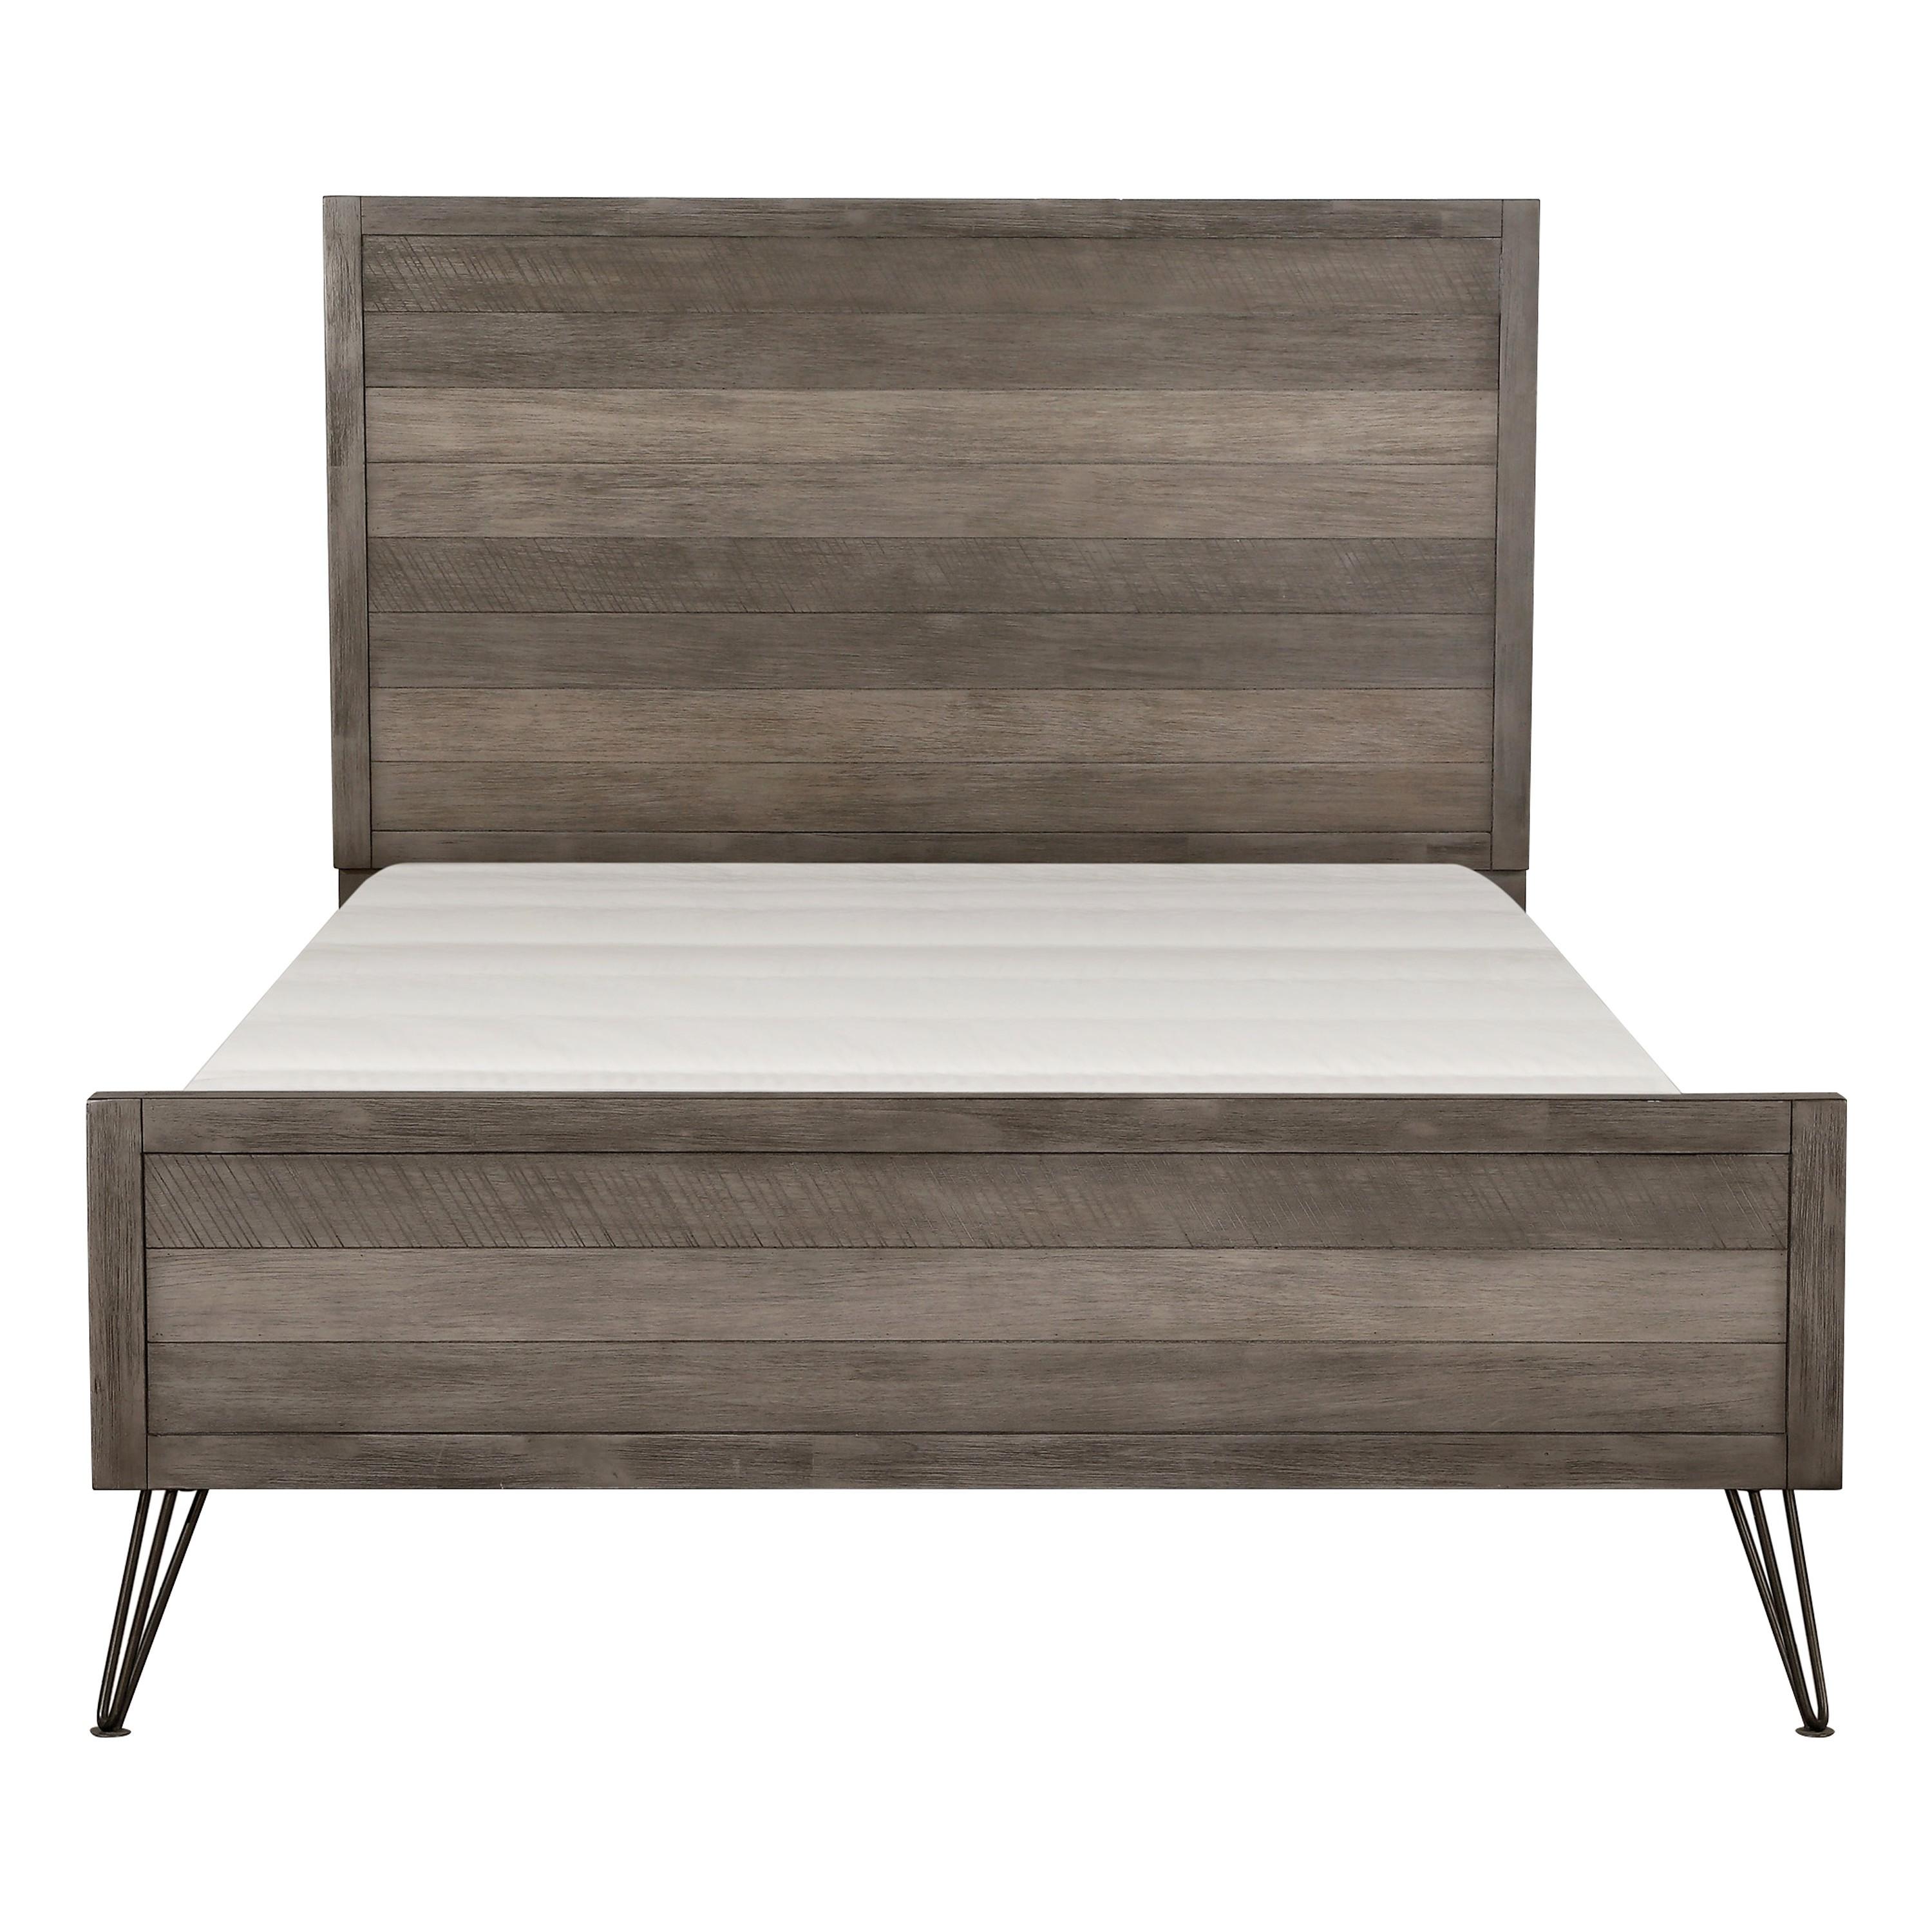 

    
Contemporary 3-Tone Gray Wood CAL Bed Homelegance 1604K-1CK* Urbanite
